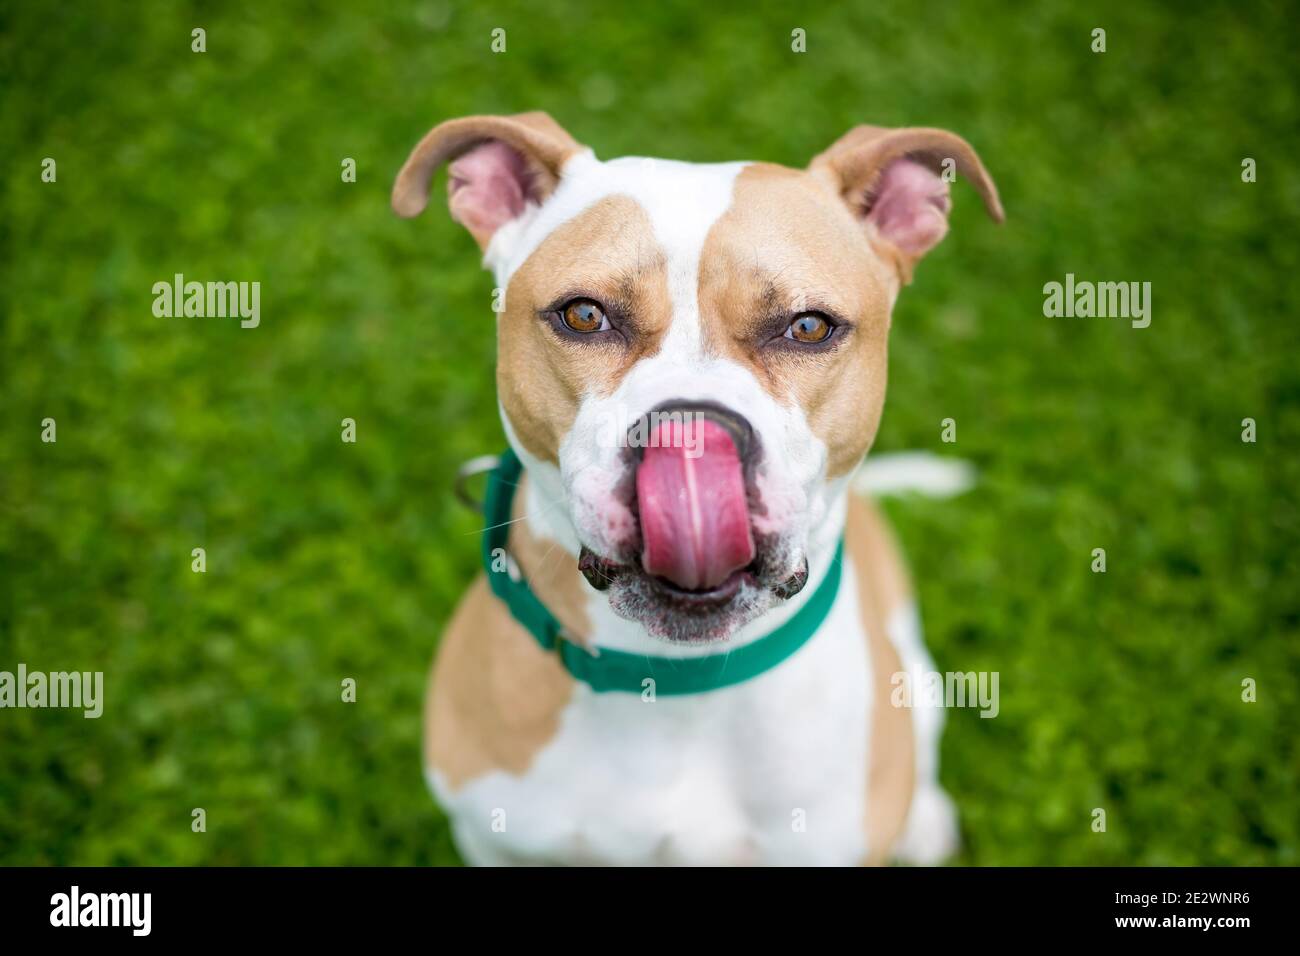 Un cane di razza mista Pit Bull Terrier con marcature bianche e fawn, indossando un collare verde e leccando le labbra Foto Stock